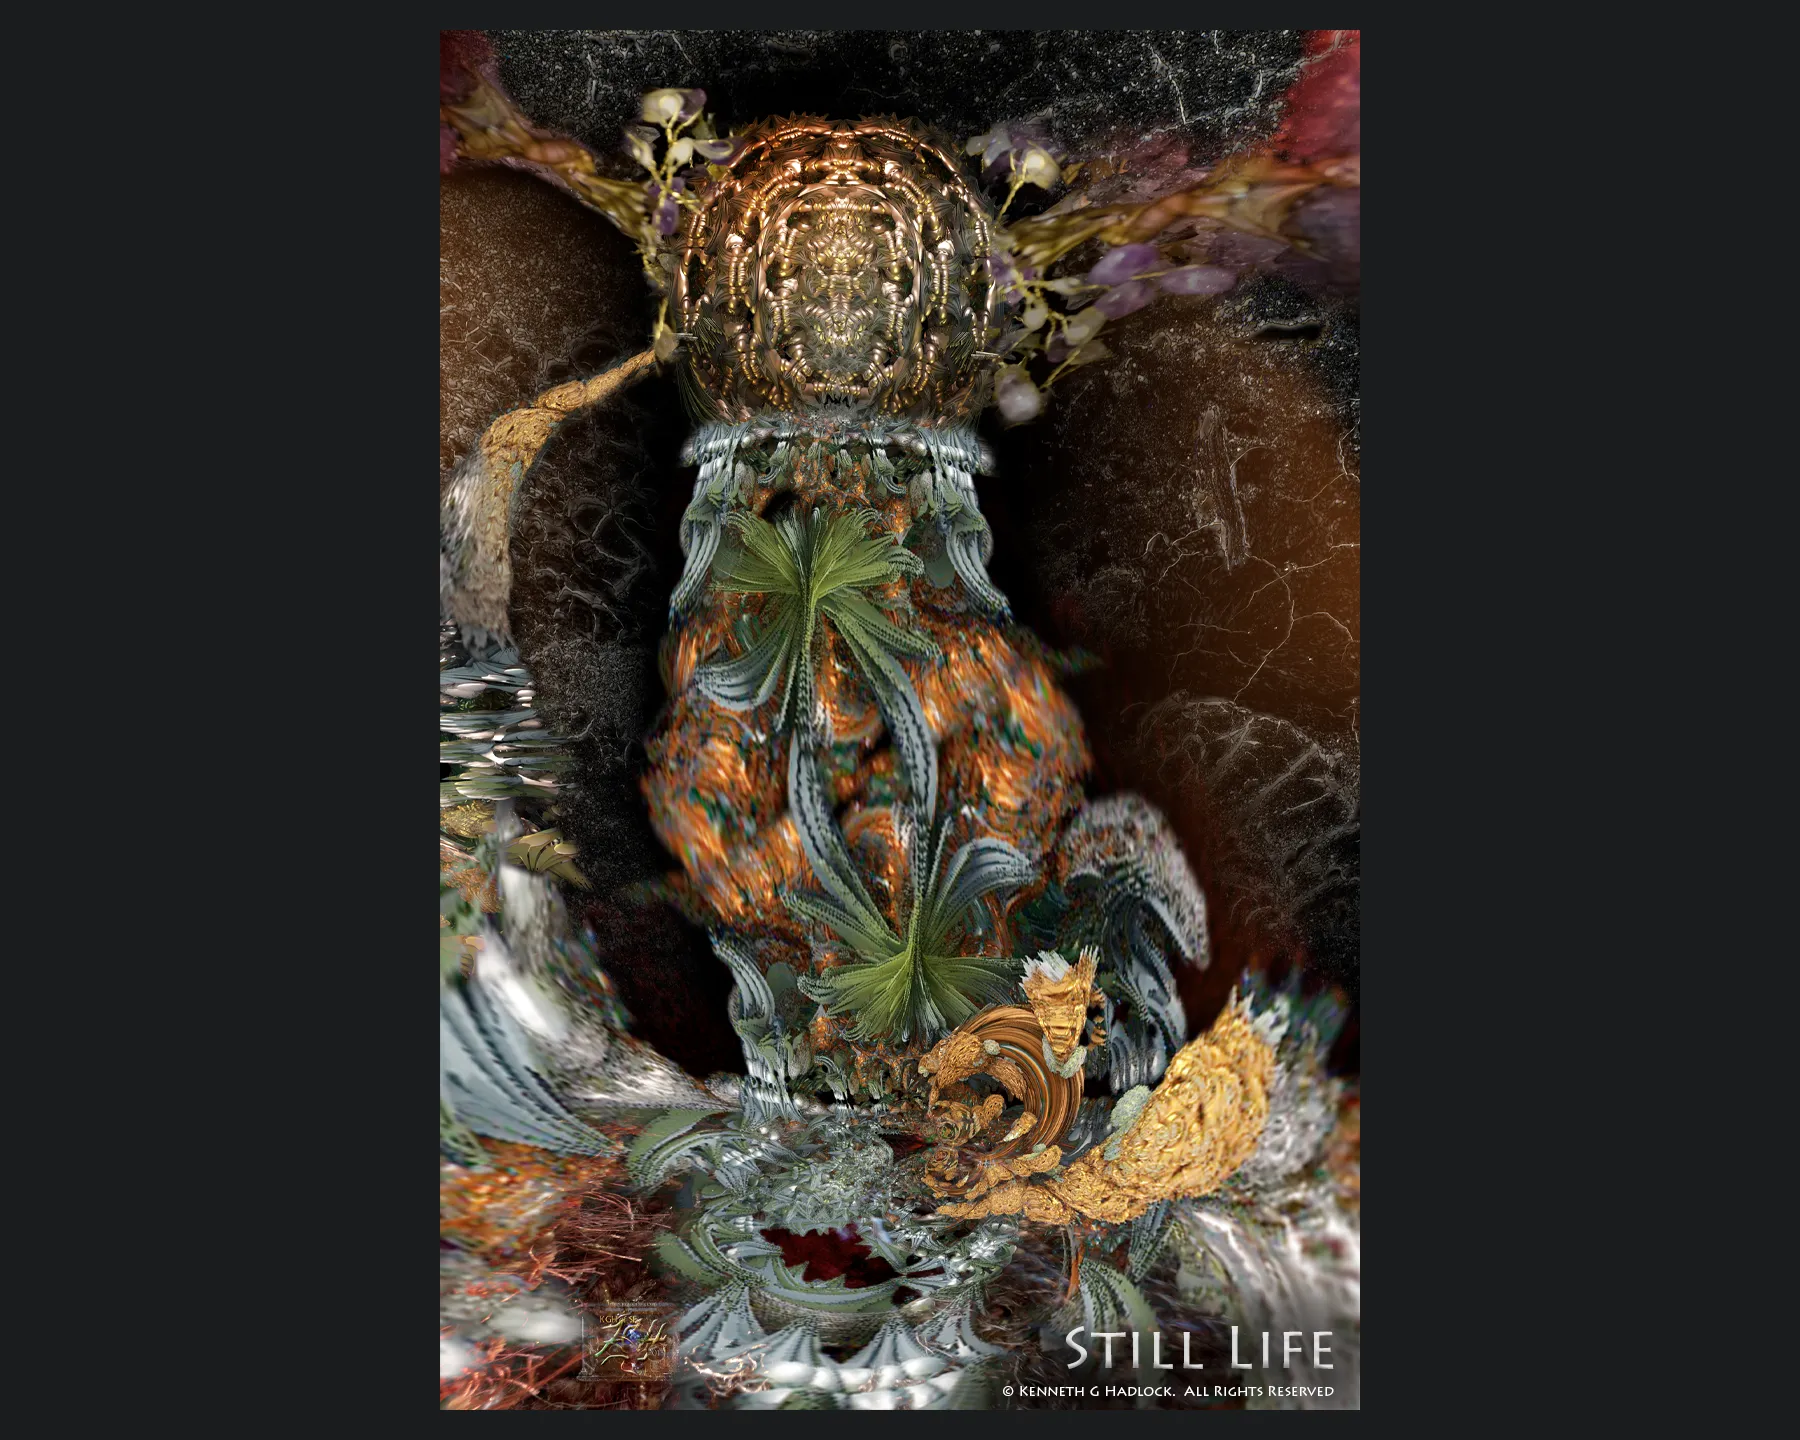 Still Life. A digital artwork by K.G. Hadlock